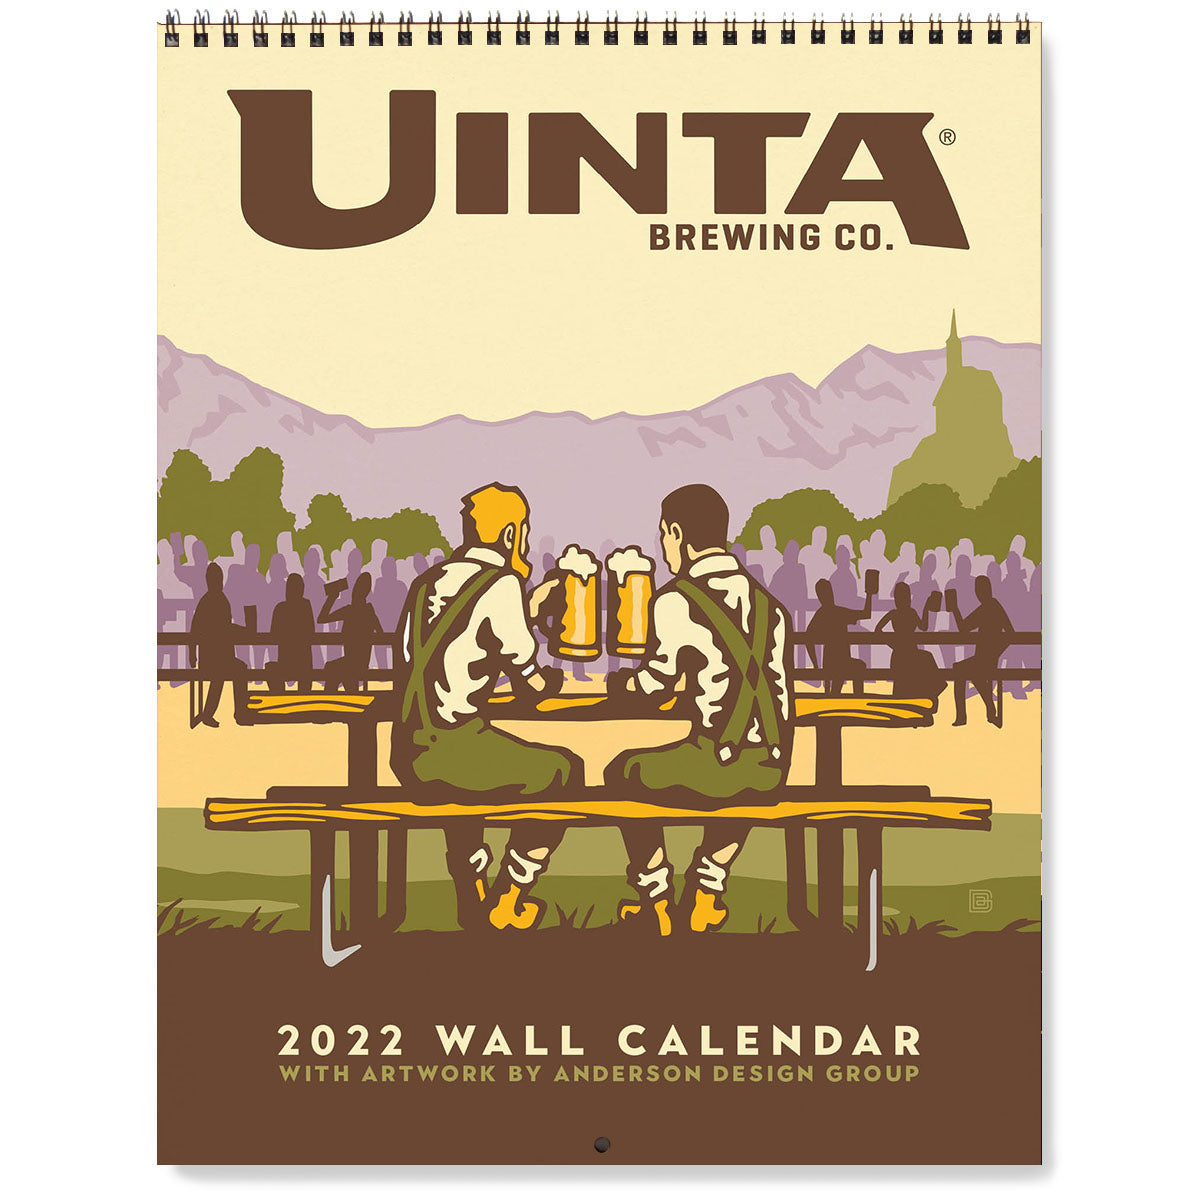 2022 Wall Calendar: Uinta Brewing Co.